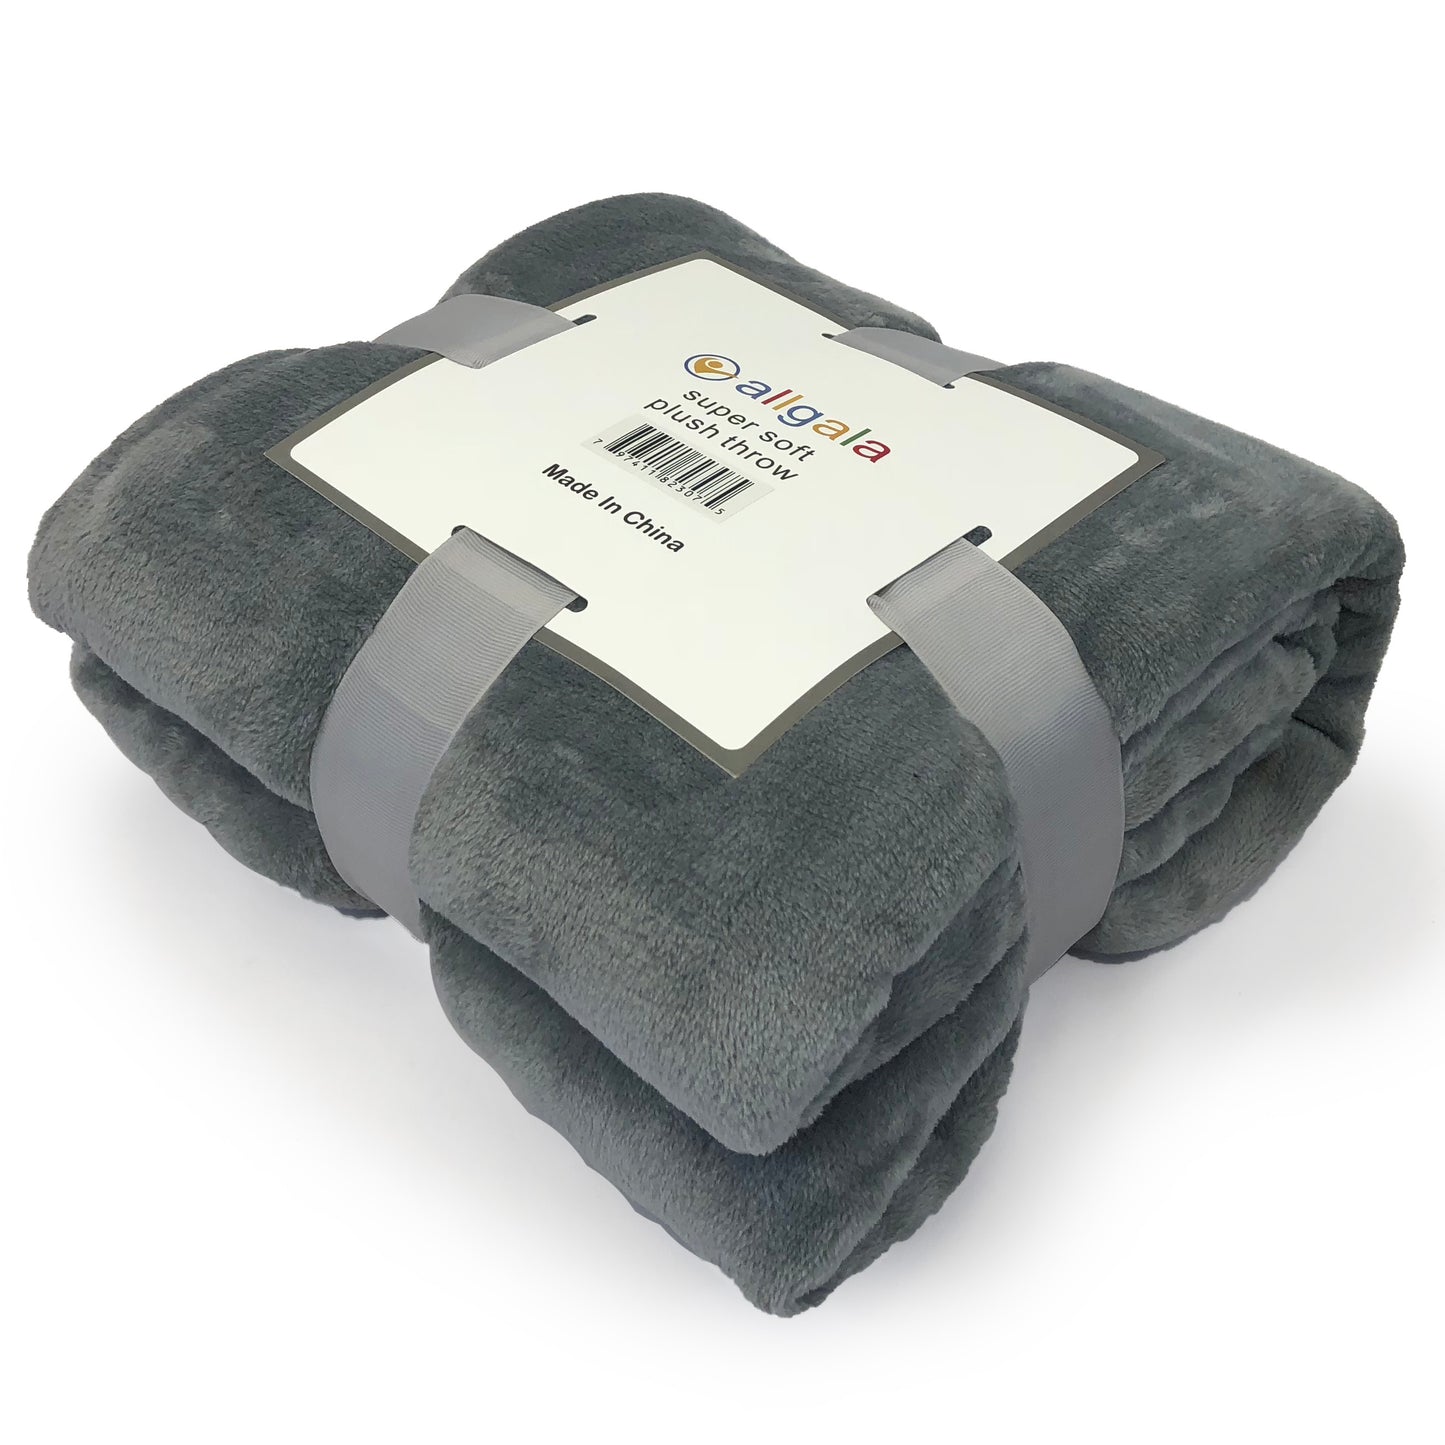 Blanket 60x45 Super Soft Flannel Plush Light Weight Throw Blanket